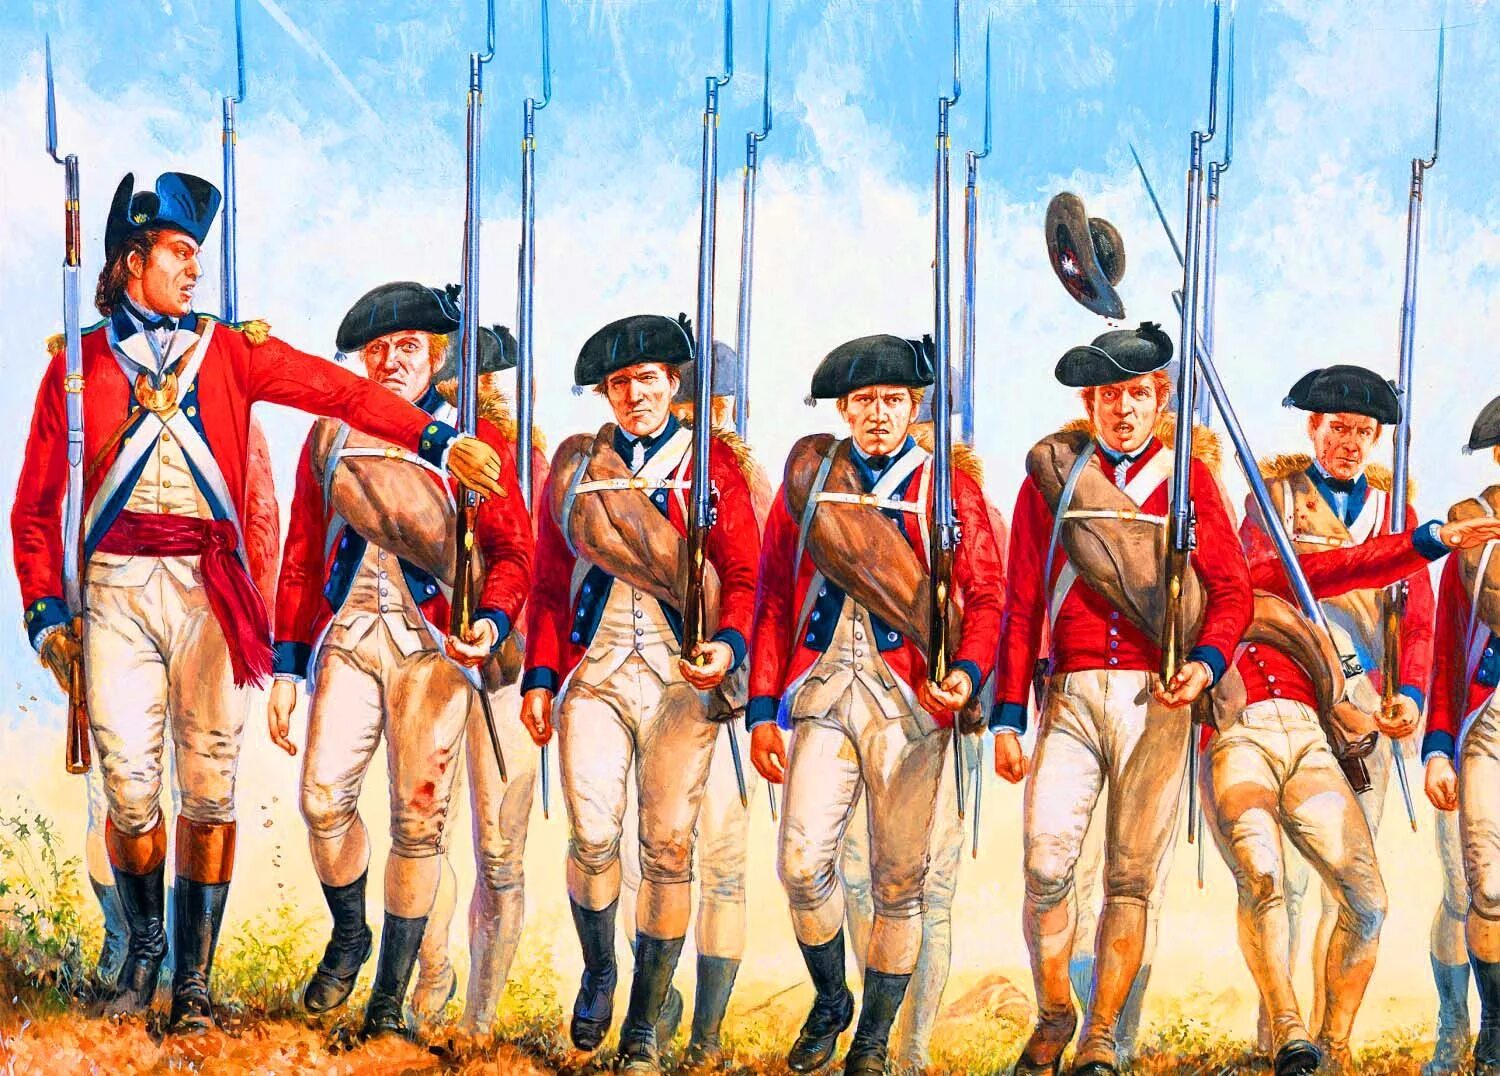 Uk 18. Британская армия в войне за независимость США. Британская униформа войны за независимость США. Французская колониальная линейная пехота 18 века. Британские войска 18 века колониальные.